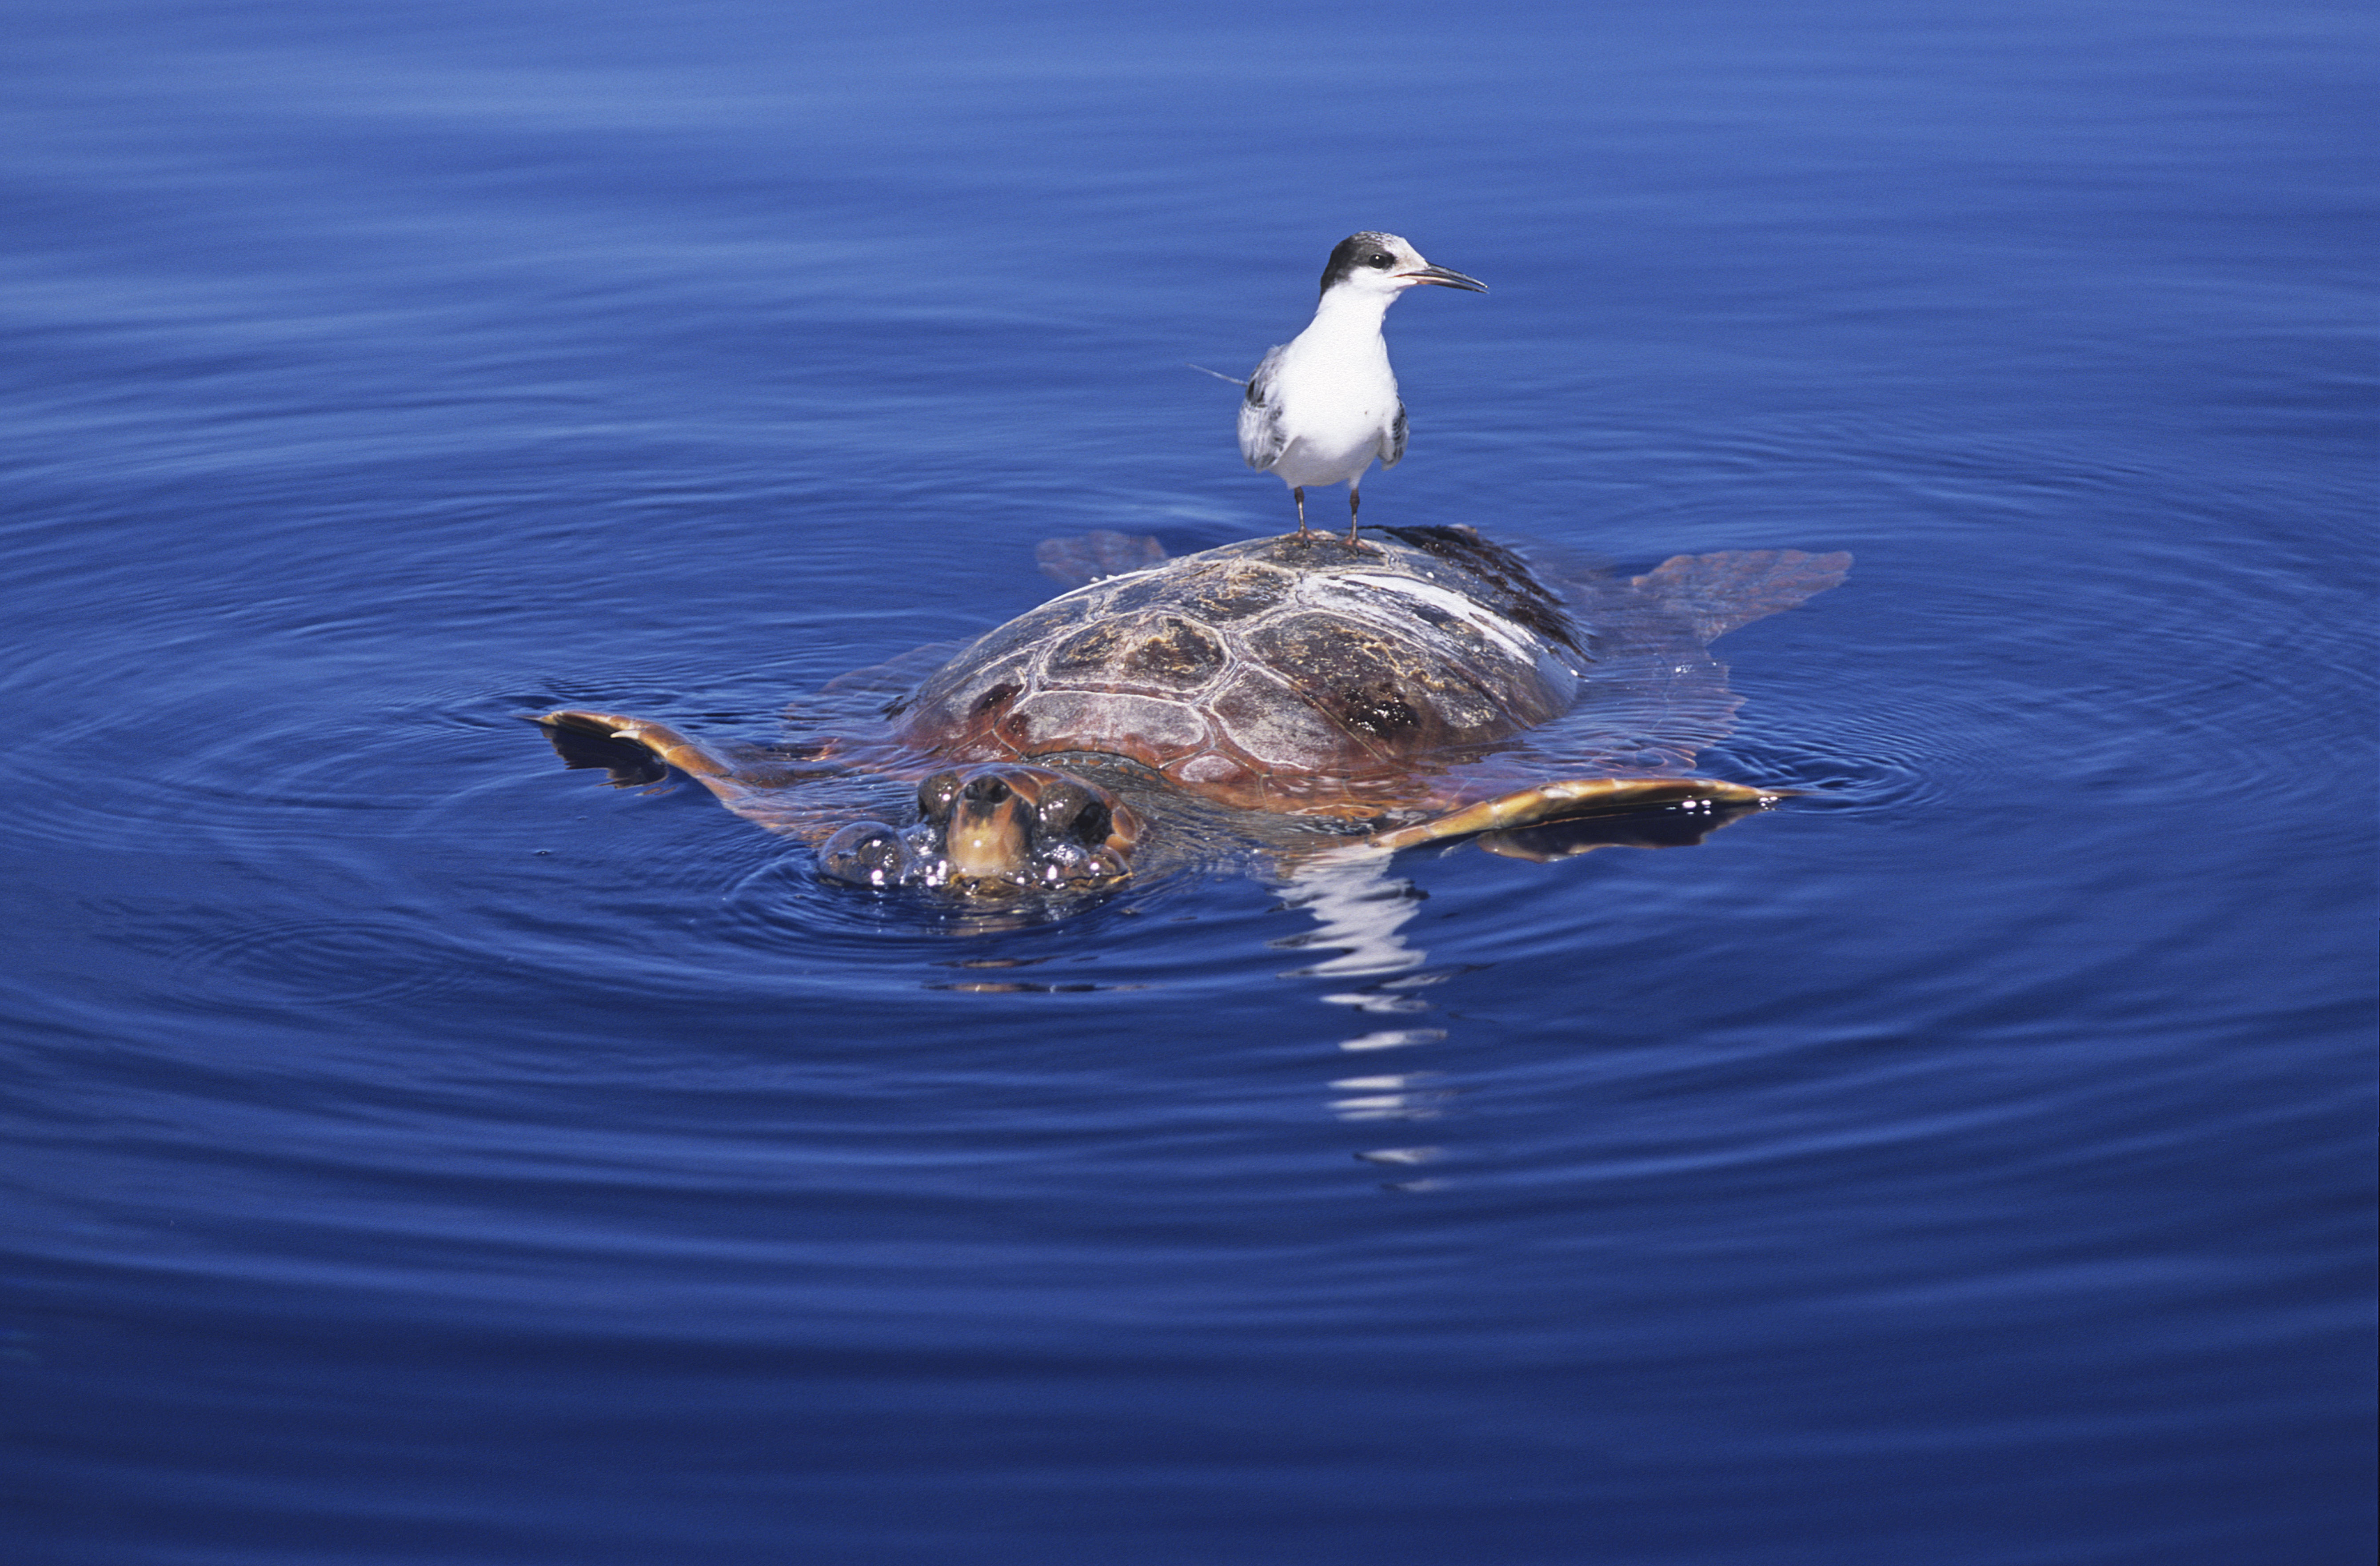 Nyolc gyerek halt meg miután tengeri teknőst ettek Zanzibárban